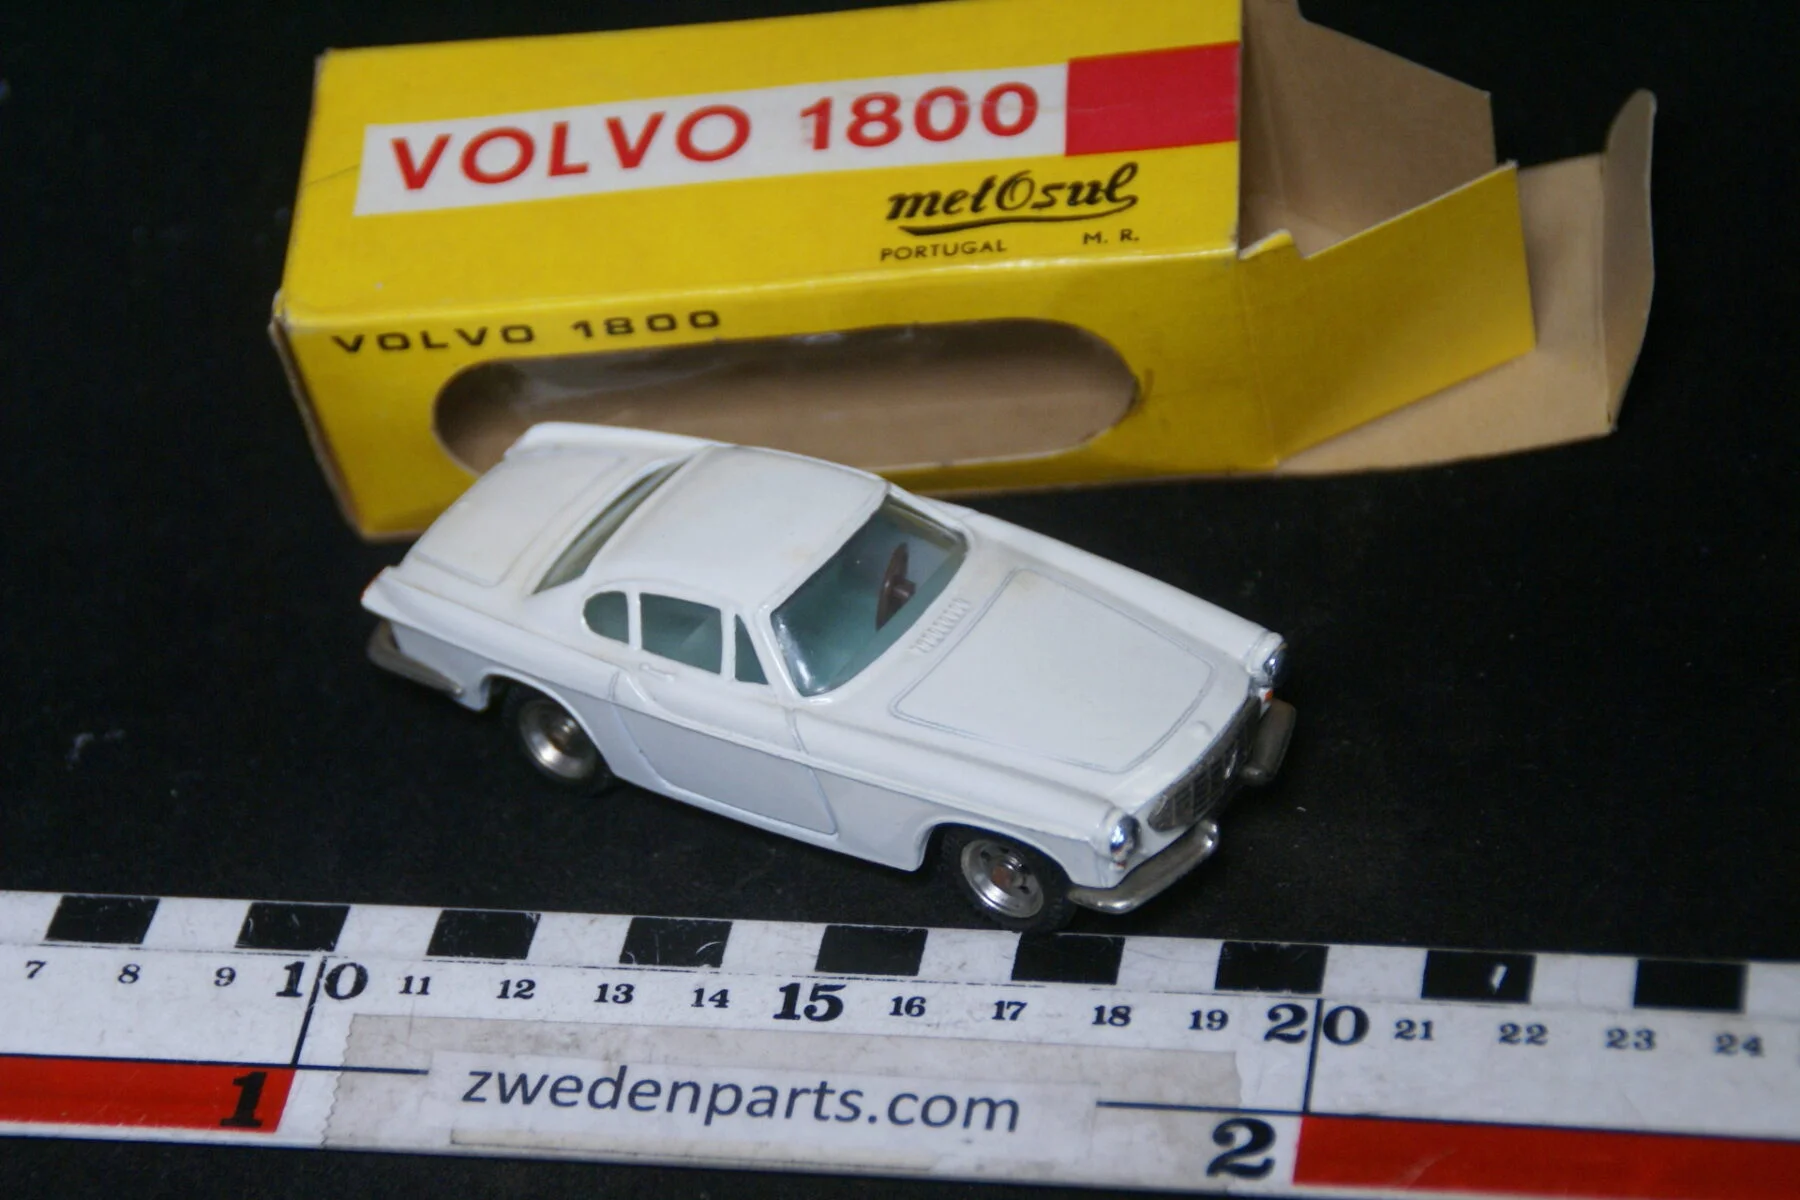 DSC02363 ca 1961 miniatuur Volvo 1800 beige, schaal 1op43, Metosul nr 11, MB-904acd86